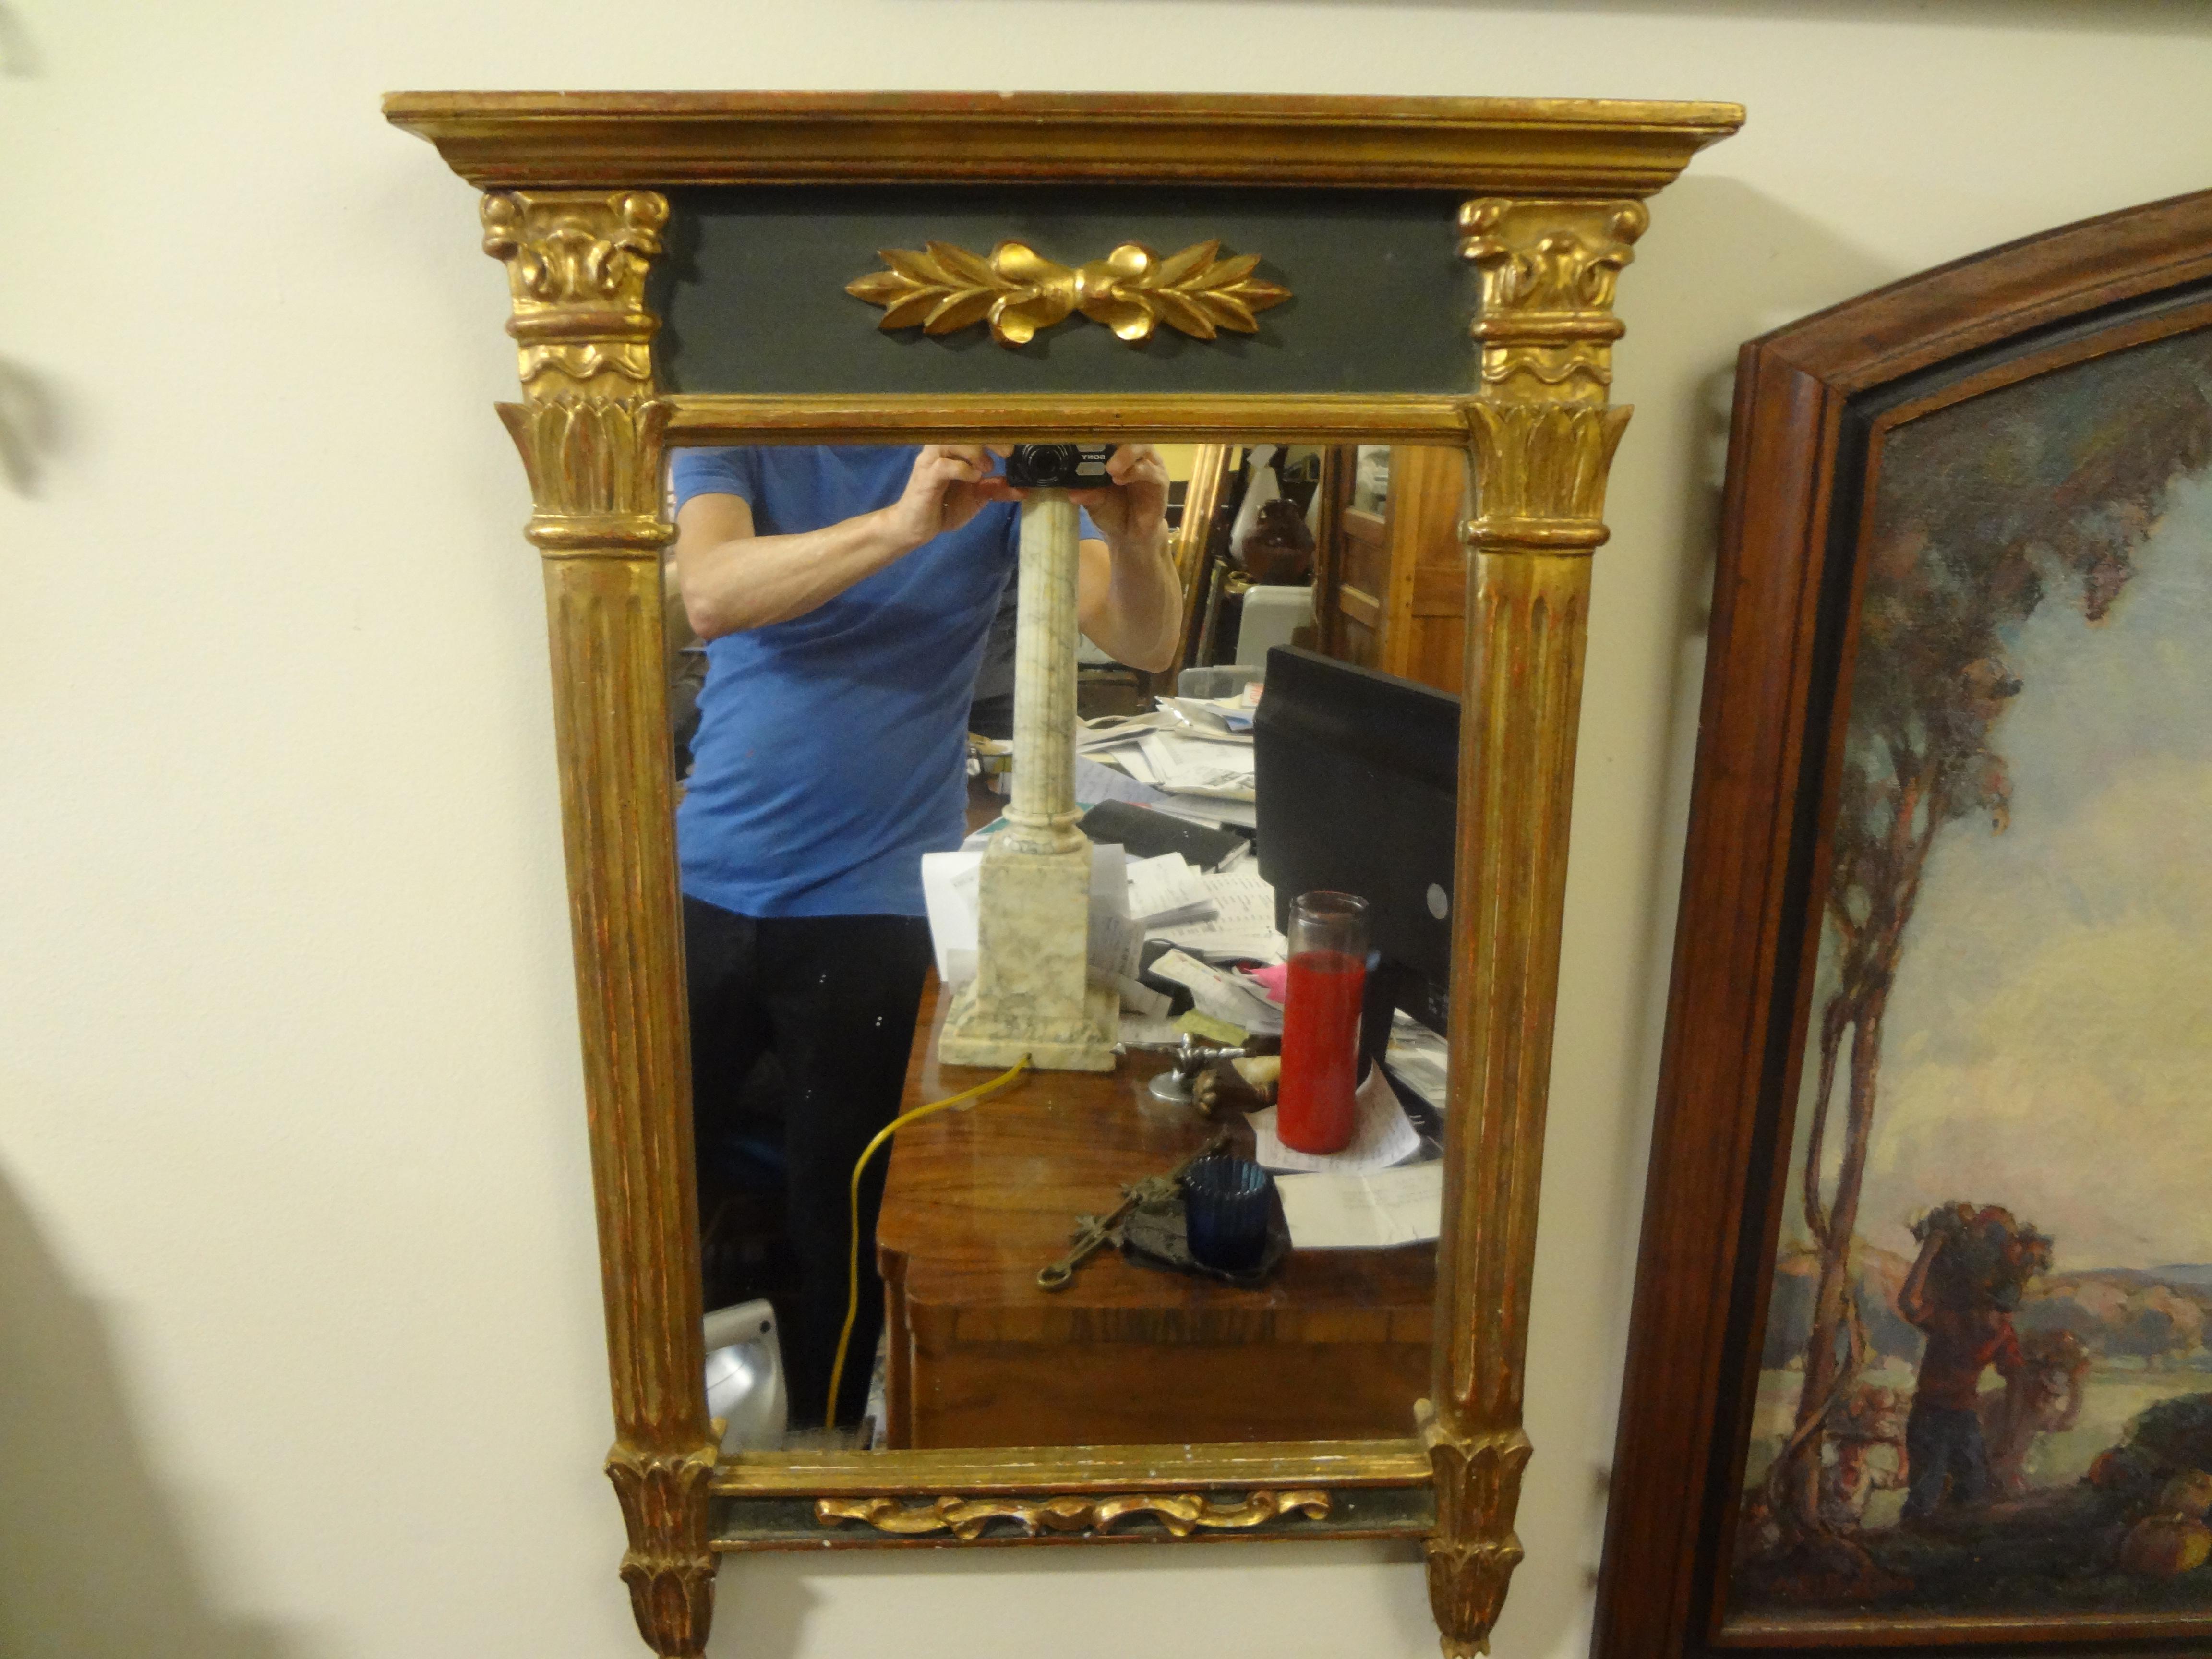 Charmant miroir français de style Louis XVI peint et en bois doré. Ce beau miroir traditionnel français en bois doré est flanqué de colonnes de chaque côté. Notre miroir français de style néoclassique Louis date des années 1920. Parfait pour une